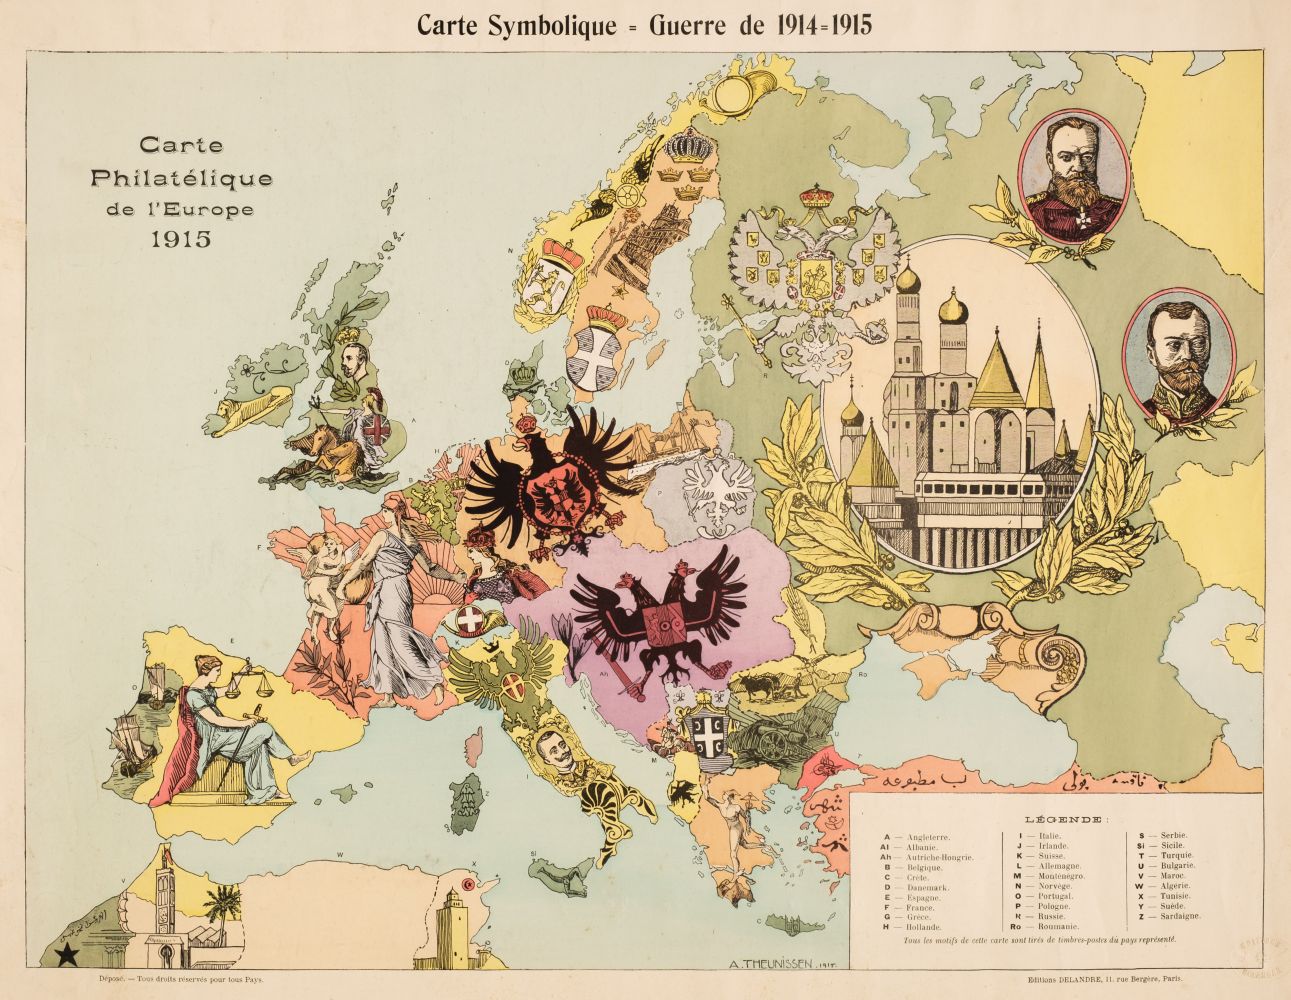 Europe. Theunissen (Andre), Carte Philatelique de l'Europe 1915, De Landre, Paris, 1915